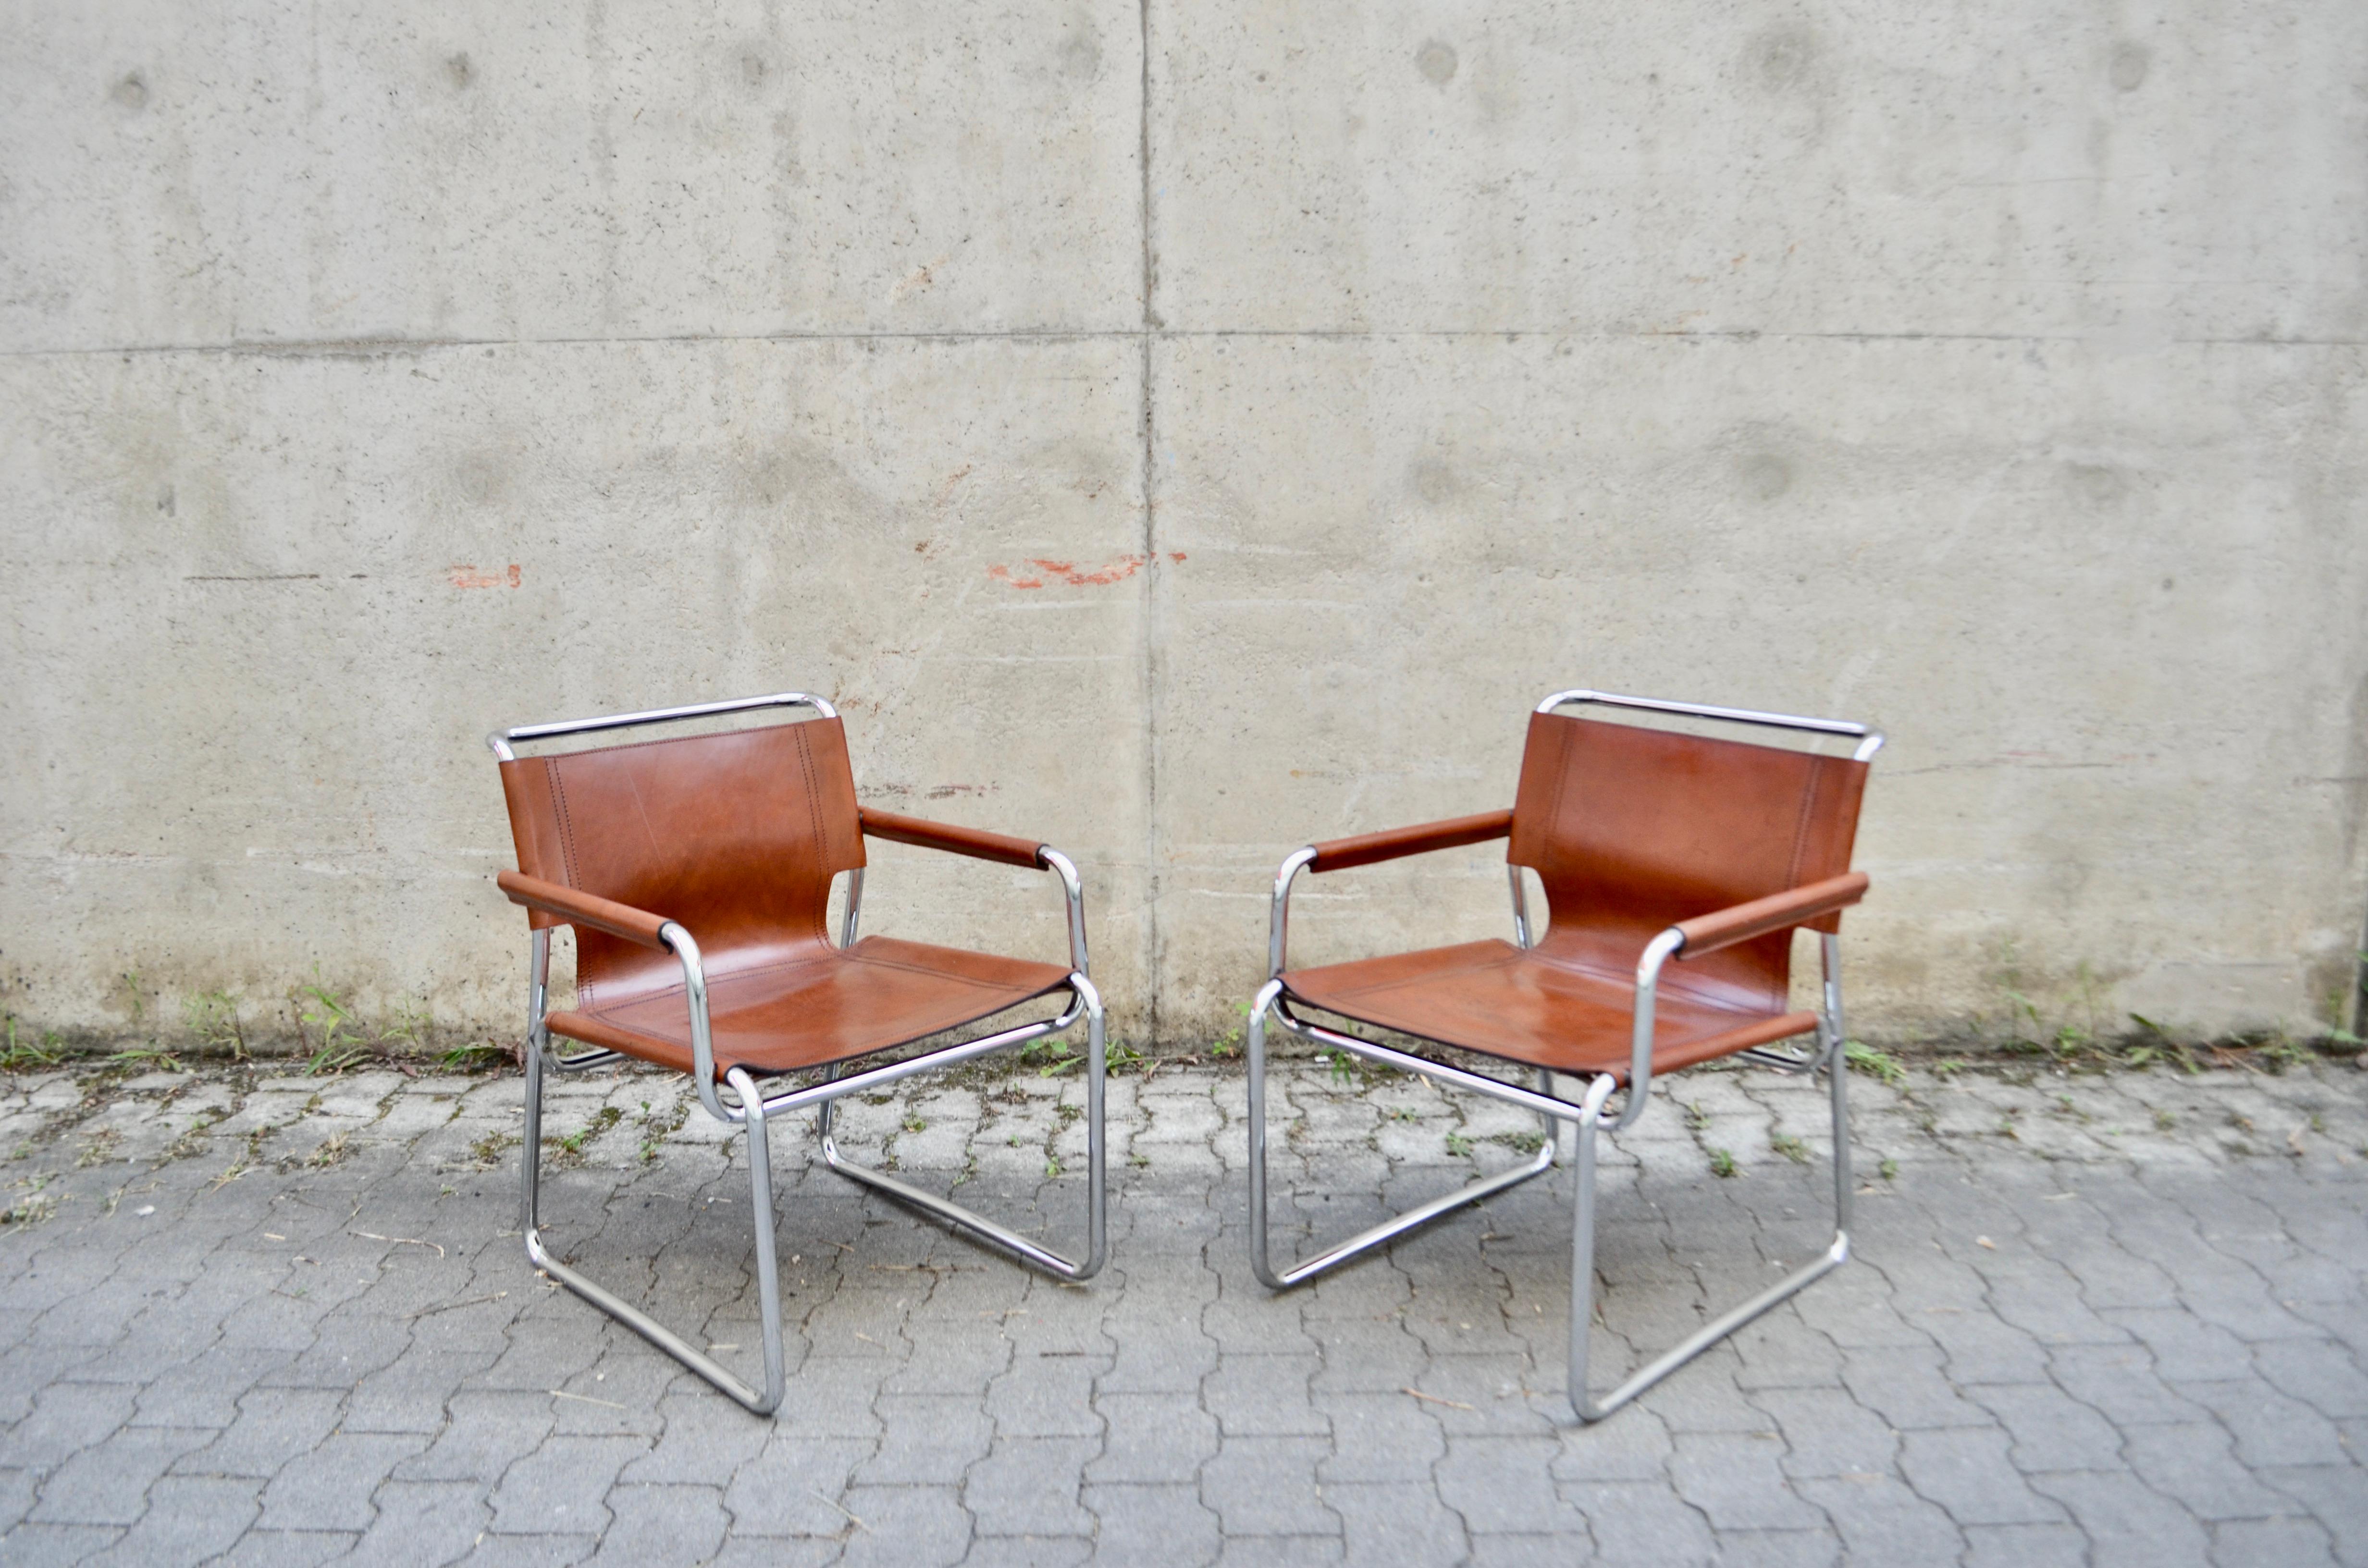 Diese Vintage-Sessel sind seltene italienische Klassiker.
In Anlehnung an Marcel Breuer sind diese Stühle stark von der Bauhaus-Bewegung inspiriert.
Es ist das dicke Sattelleder, das mit den Jahren eine herrliche, gut gealterte Patina entwickelt